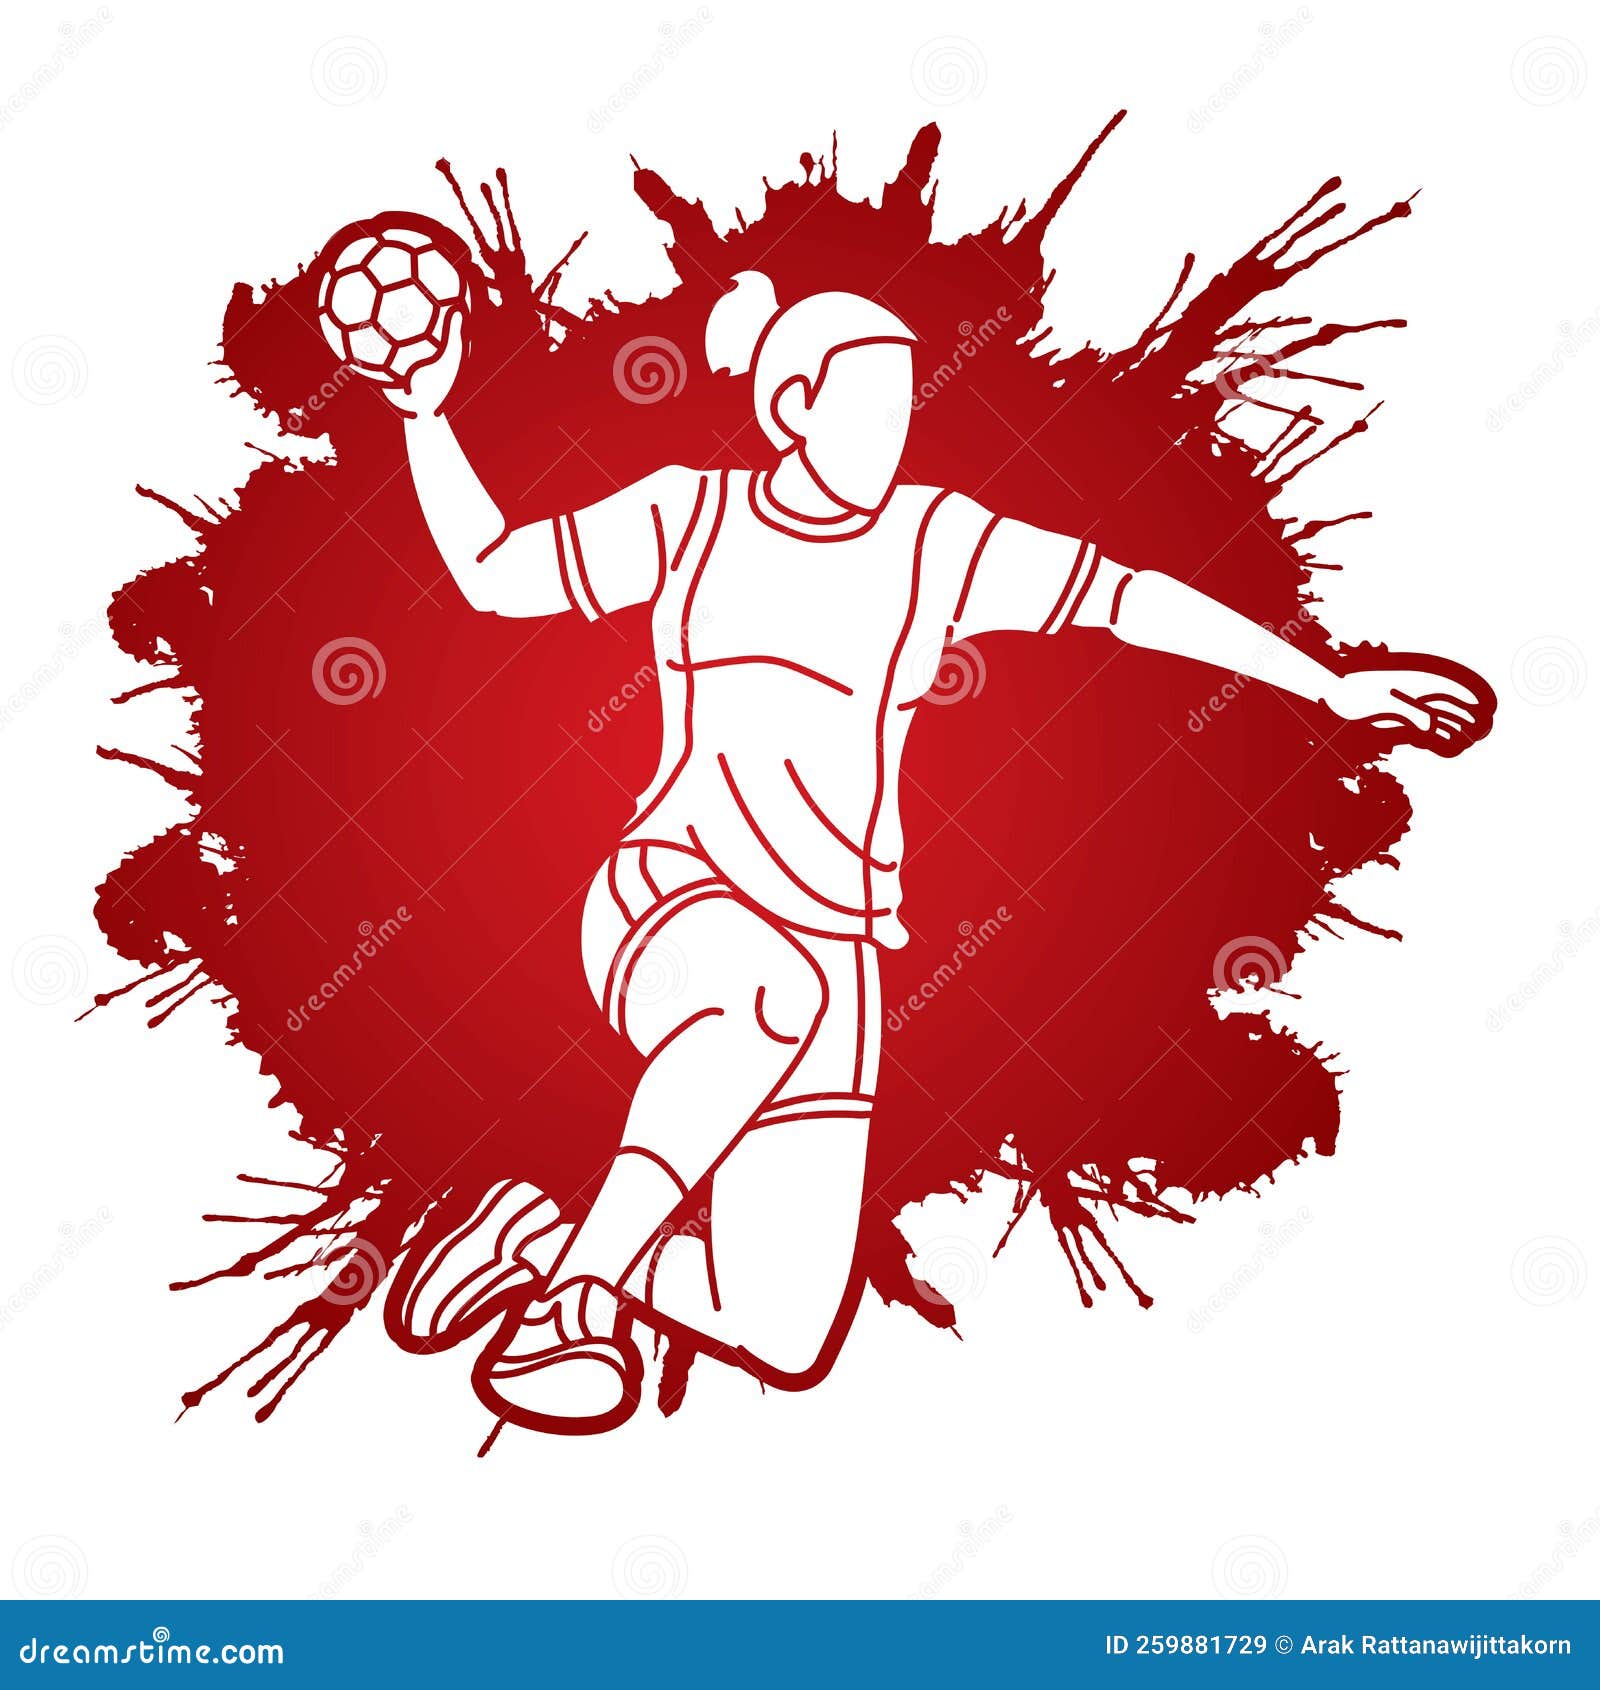 Jogador Handebol Ação Ilustração Vetorial Figura Desportiva Corpo Elegante  Dinâmico imagem vetorial de Dovla982© 473301354